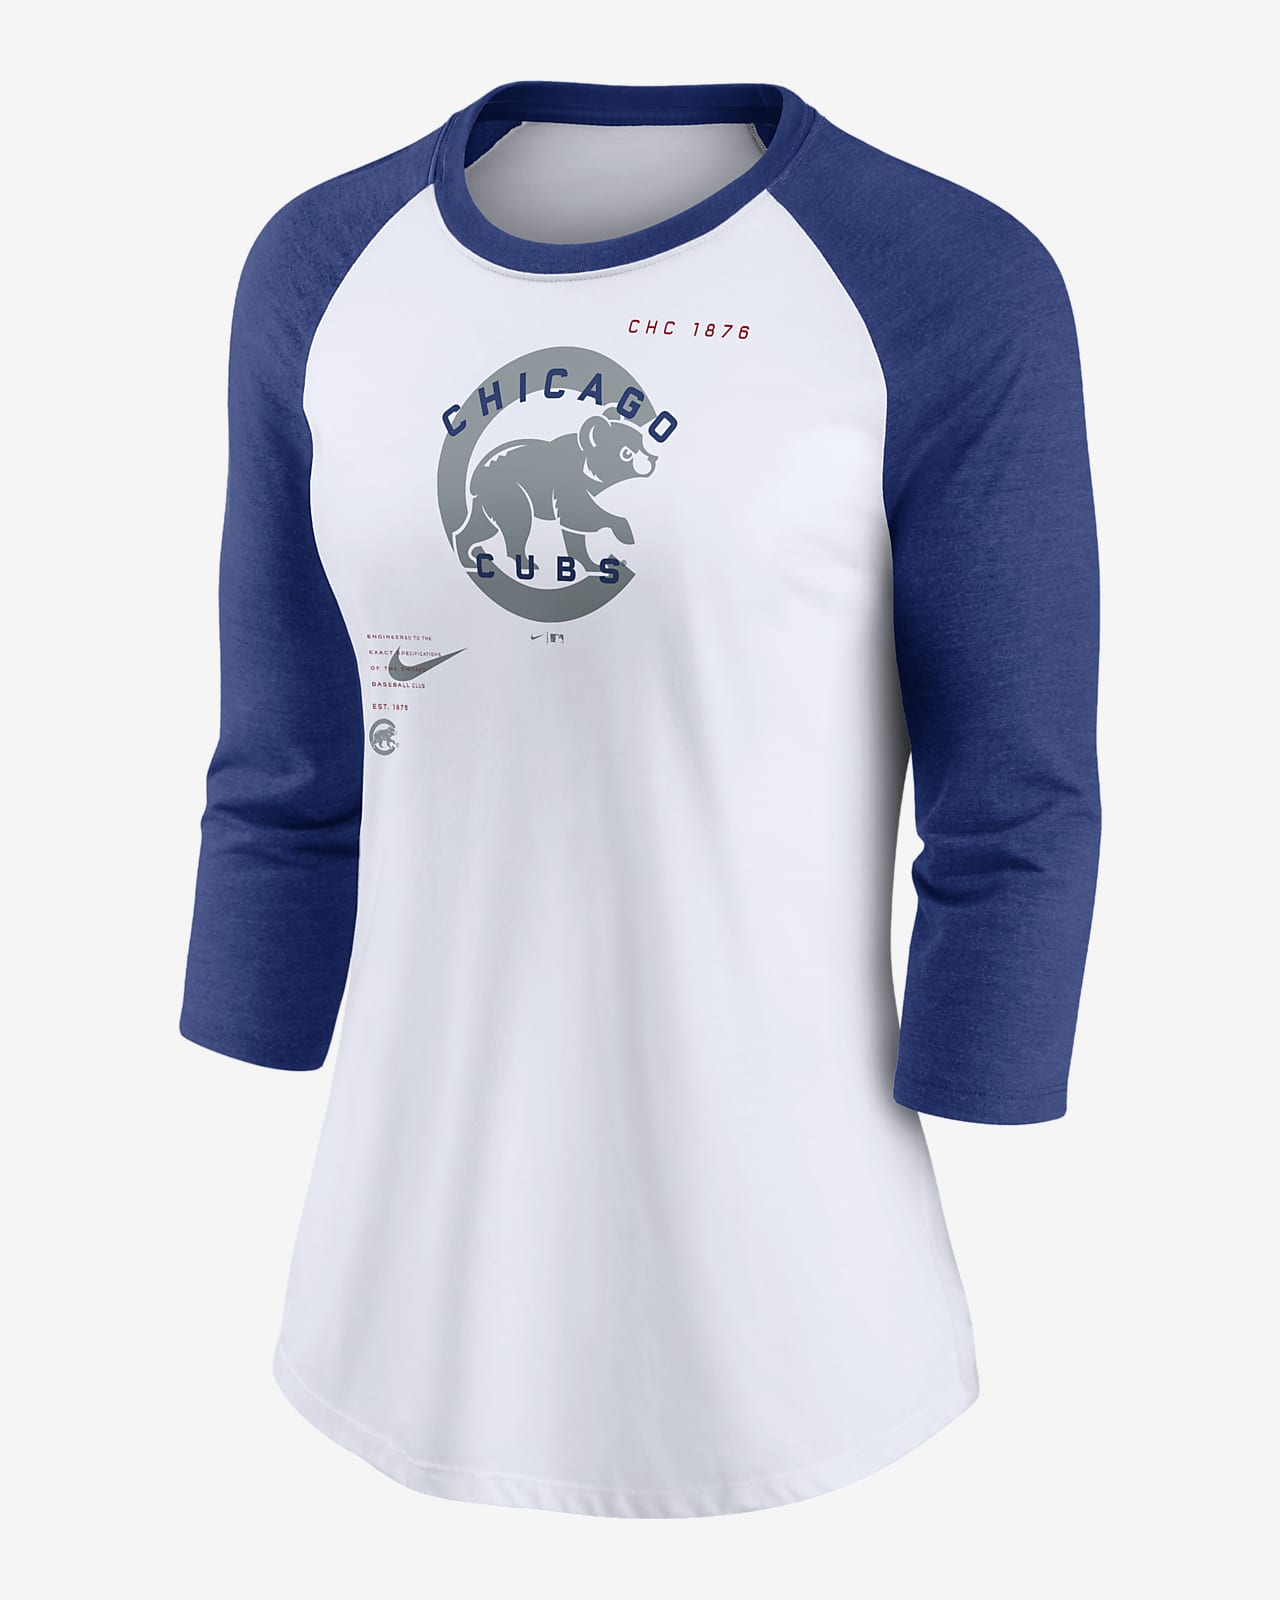 Women's Profile White Chicago Cubs Plus Size Leopard T-Shirt